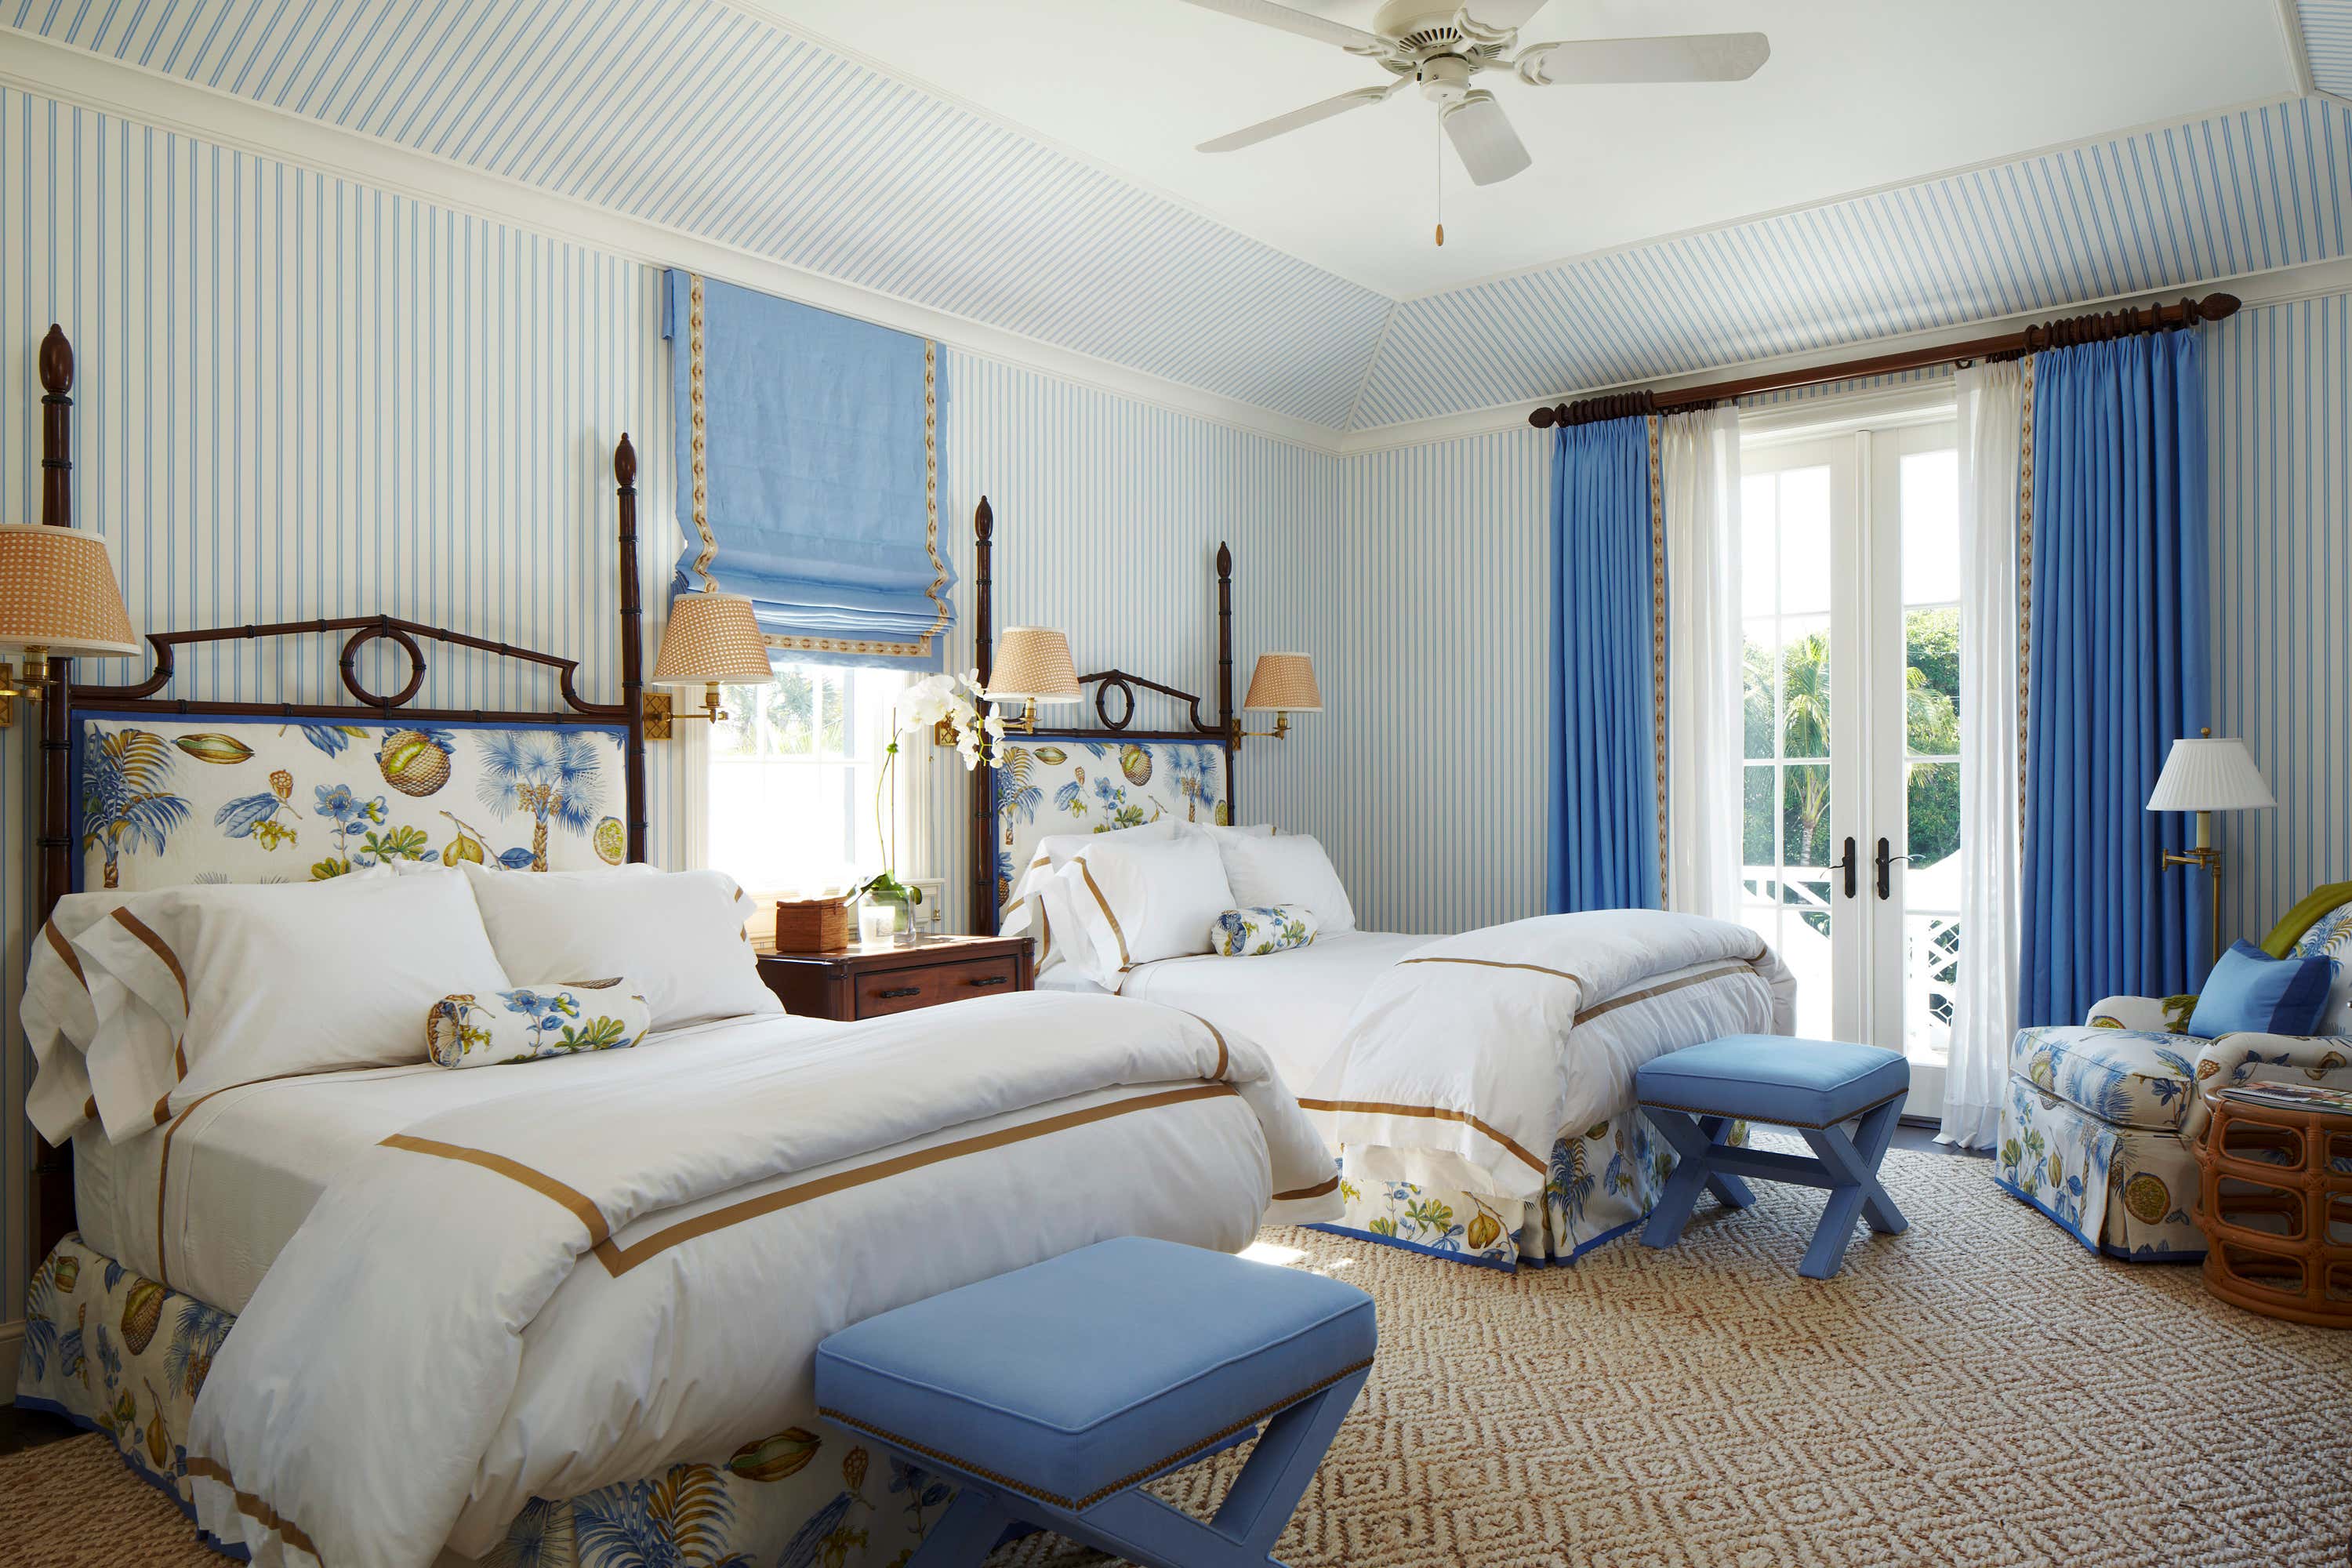 Beach Style Bedroom